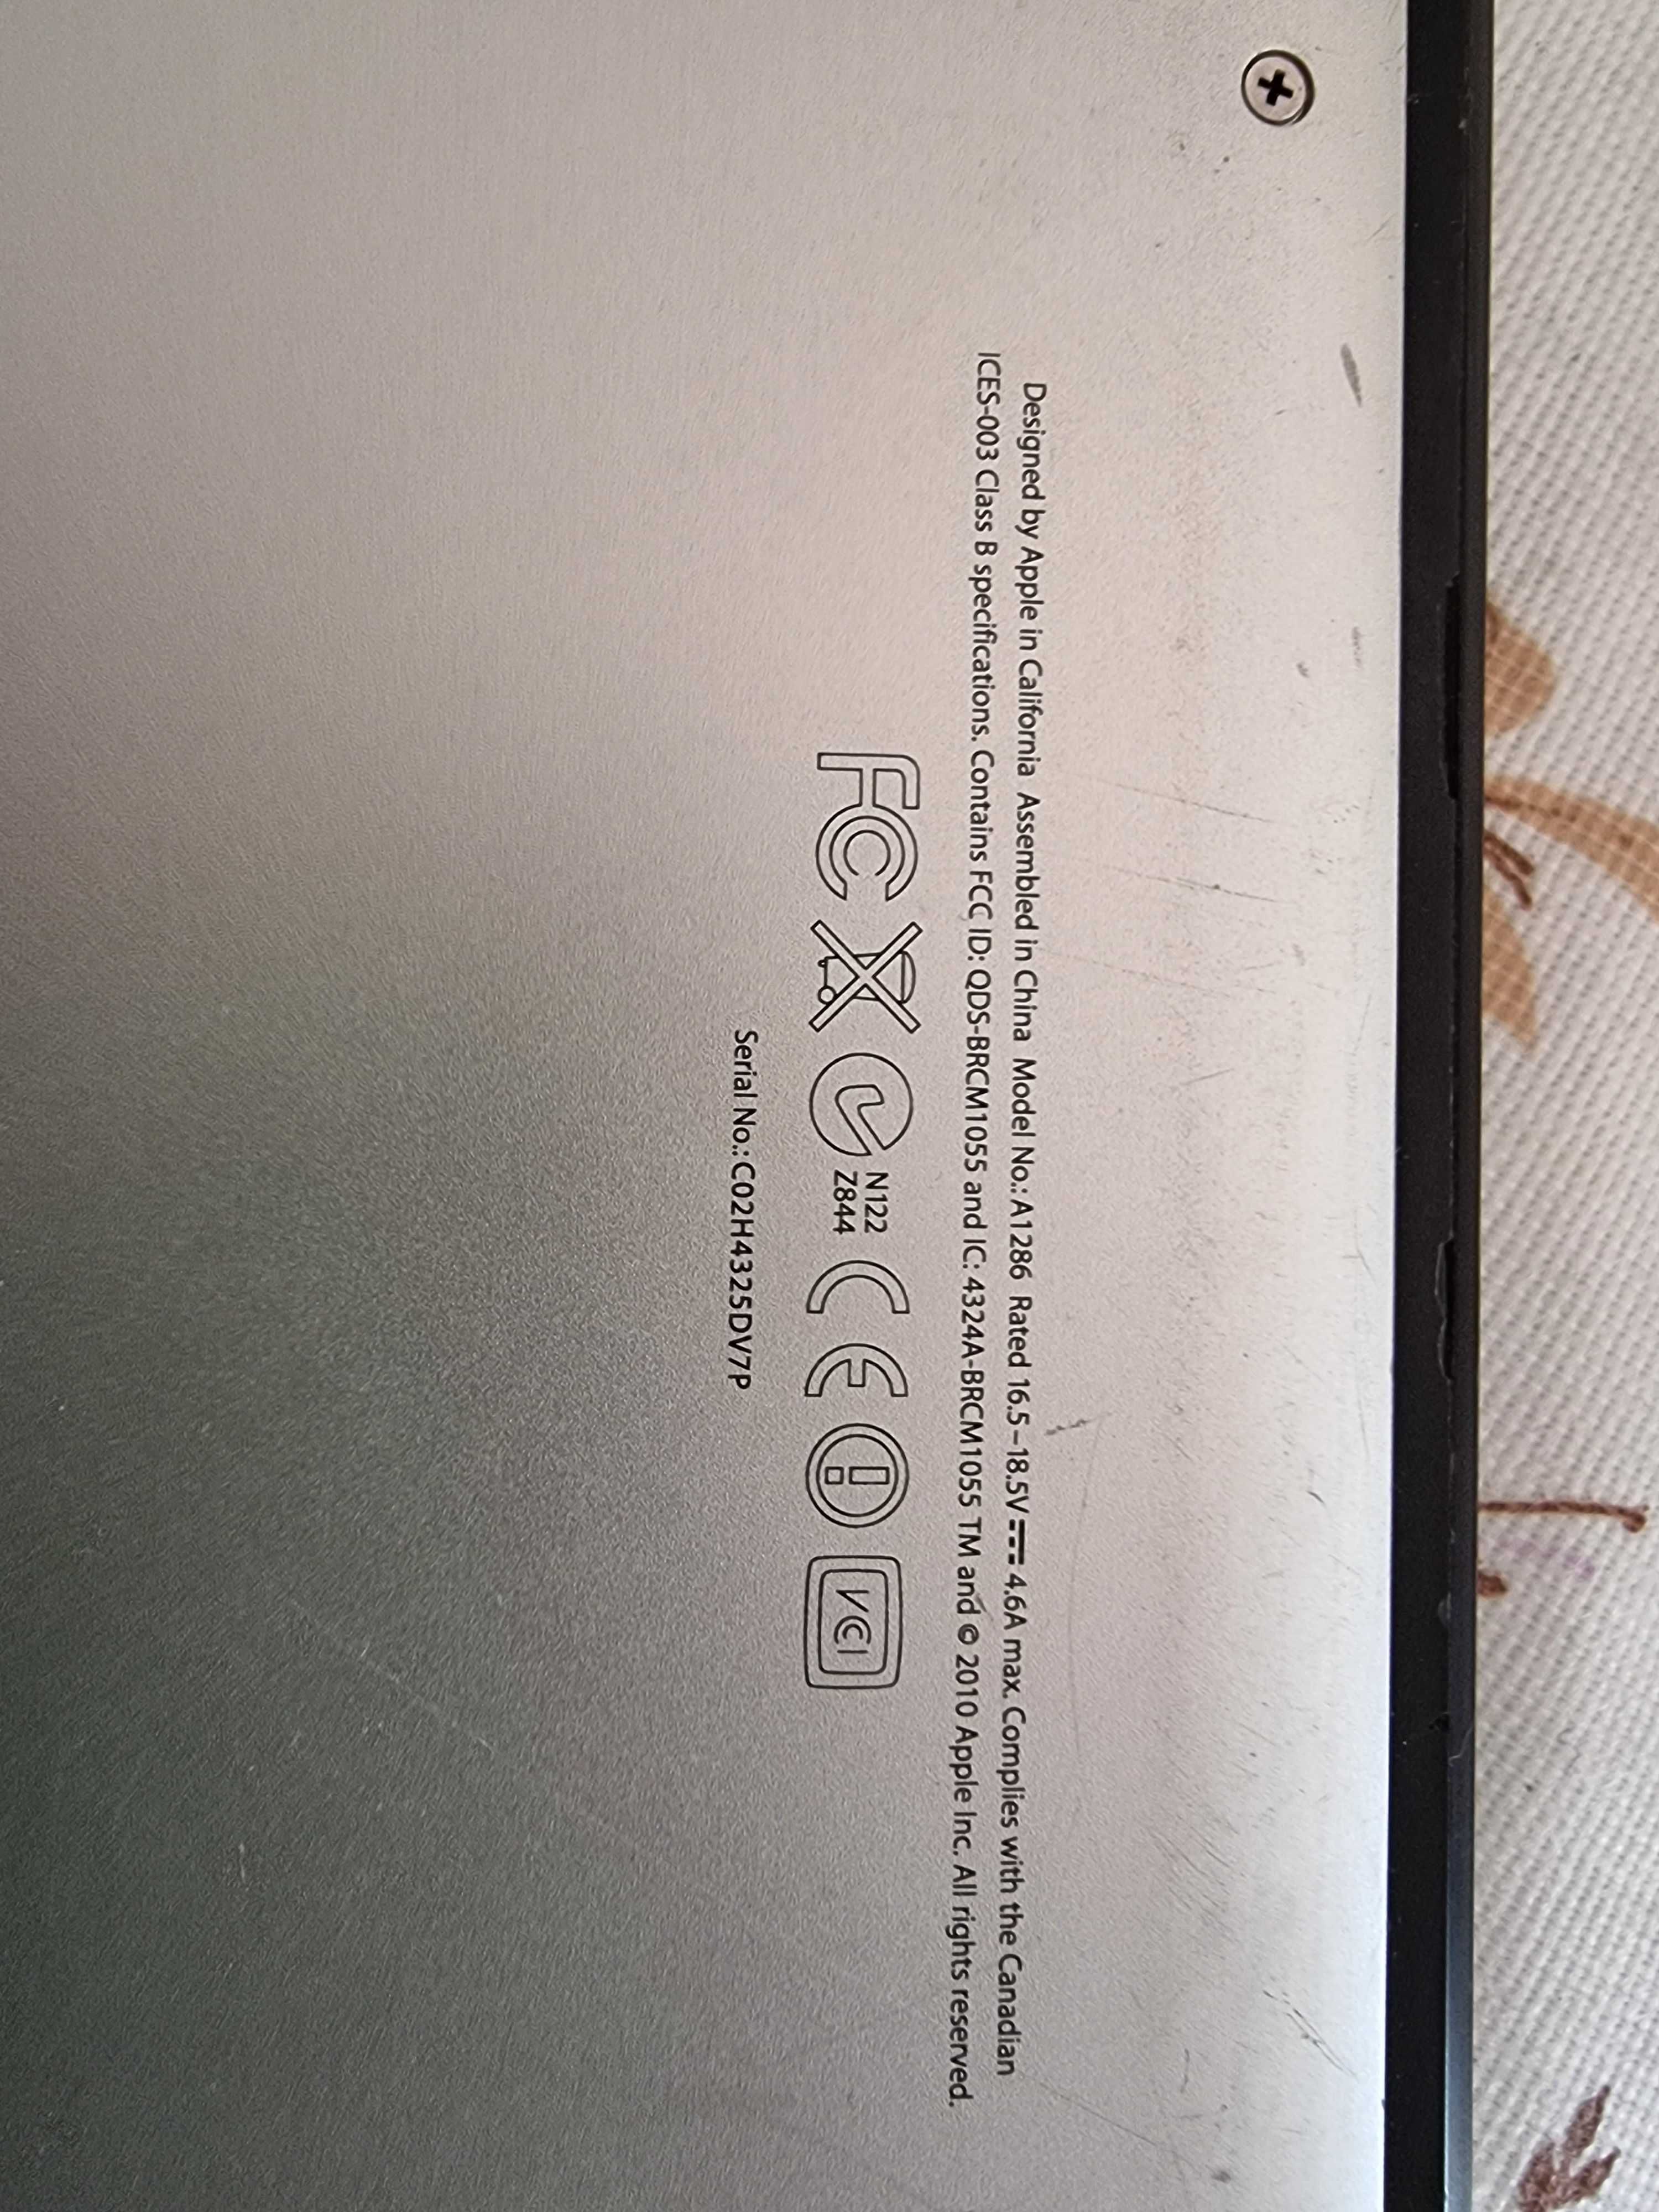 MacBook Pro - s/ funcionamento